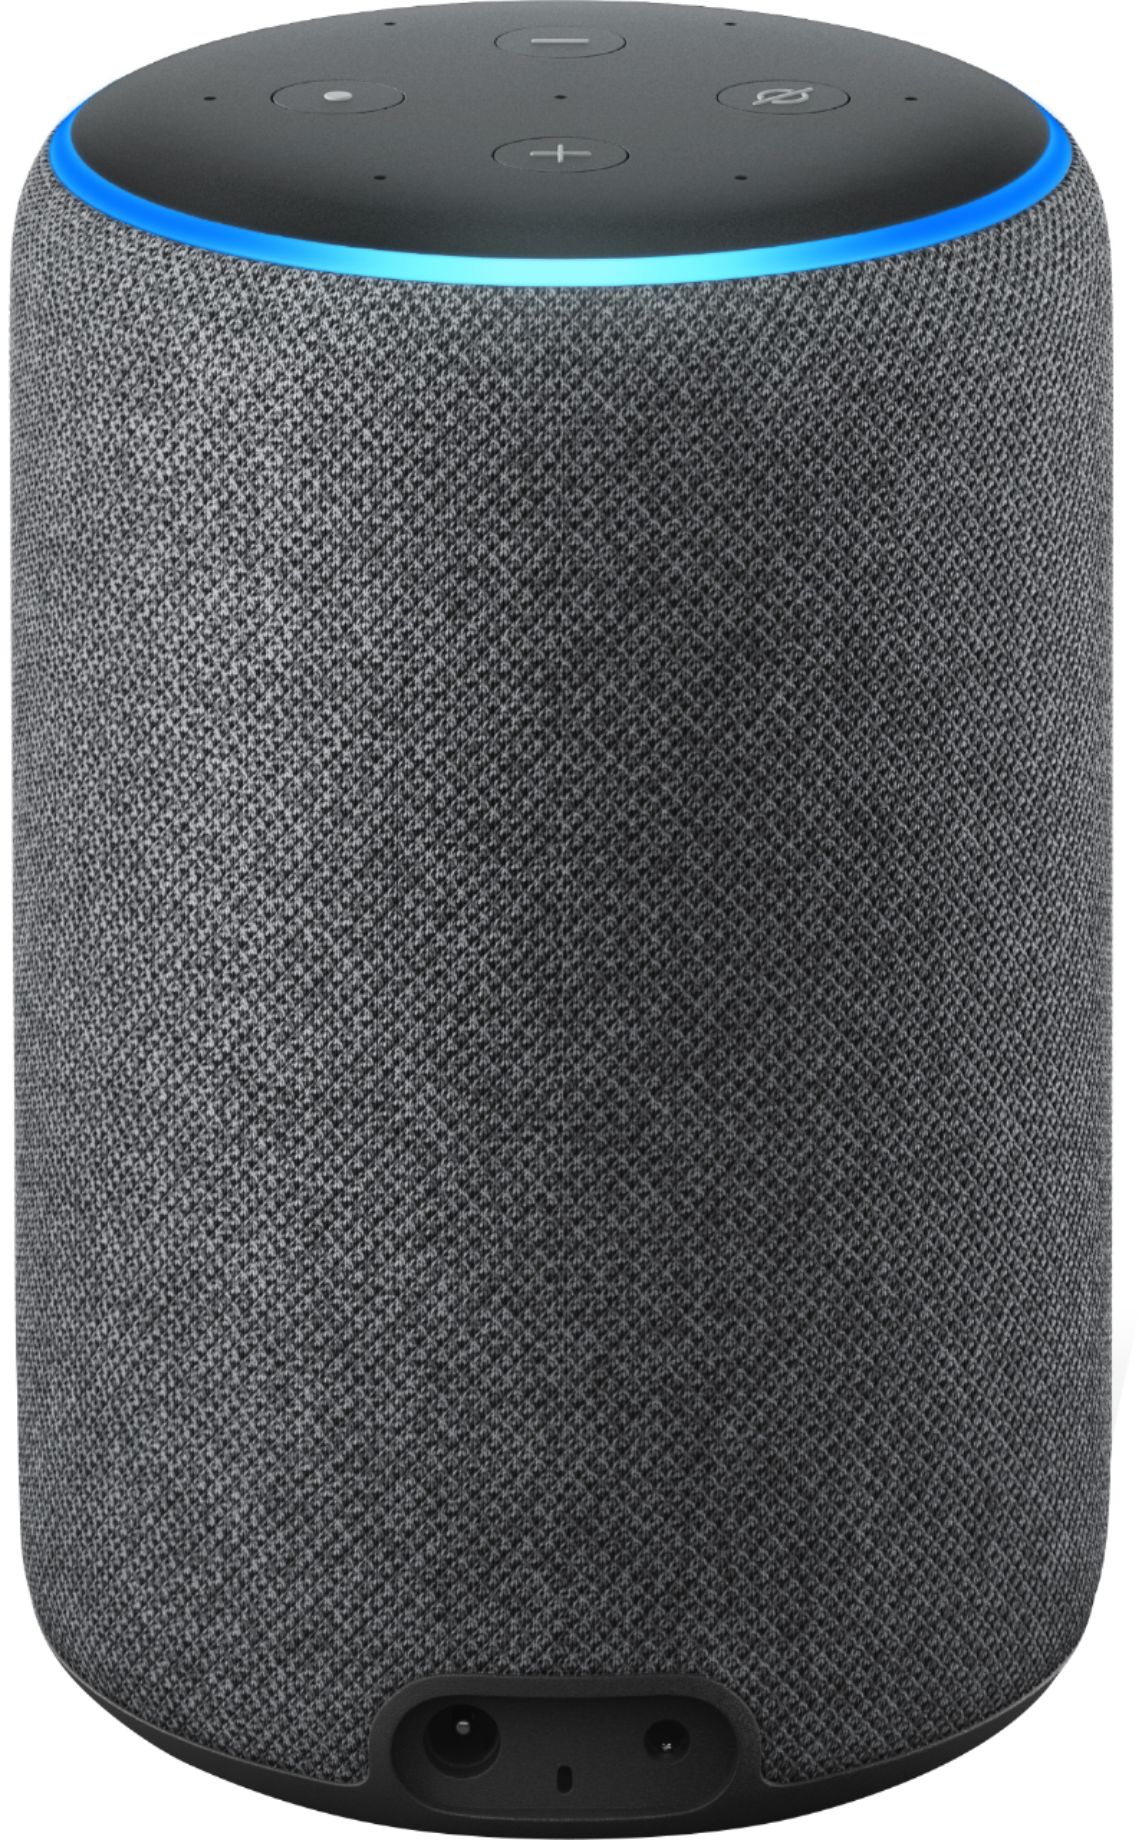 Best Buy:  Echo (3rd Gen) Smart Speaker with Alexa Charcoal B07NFTVP7P